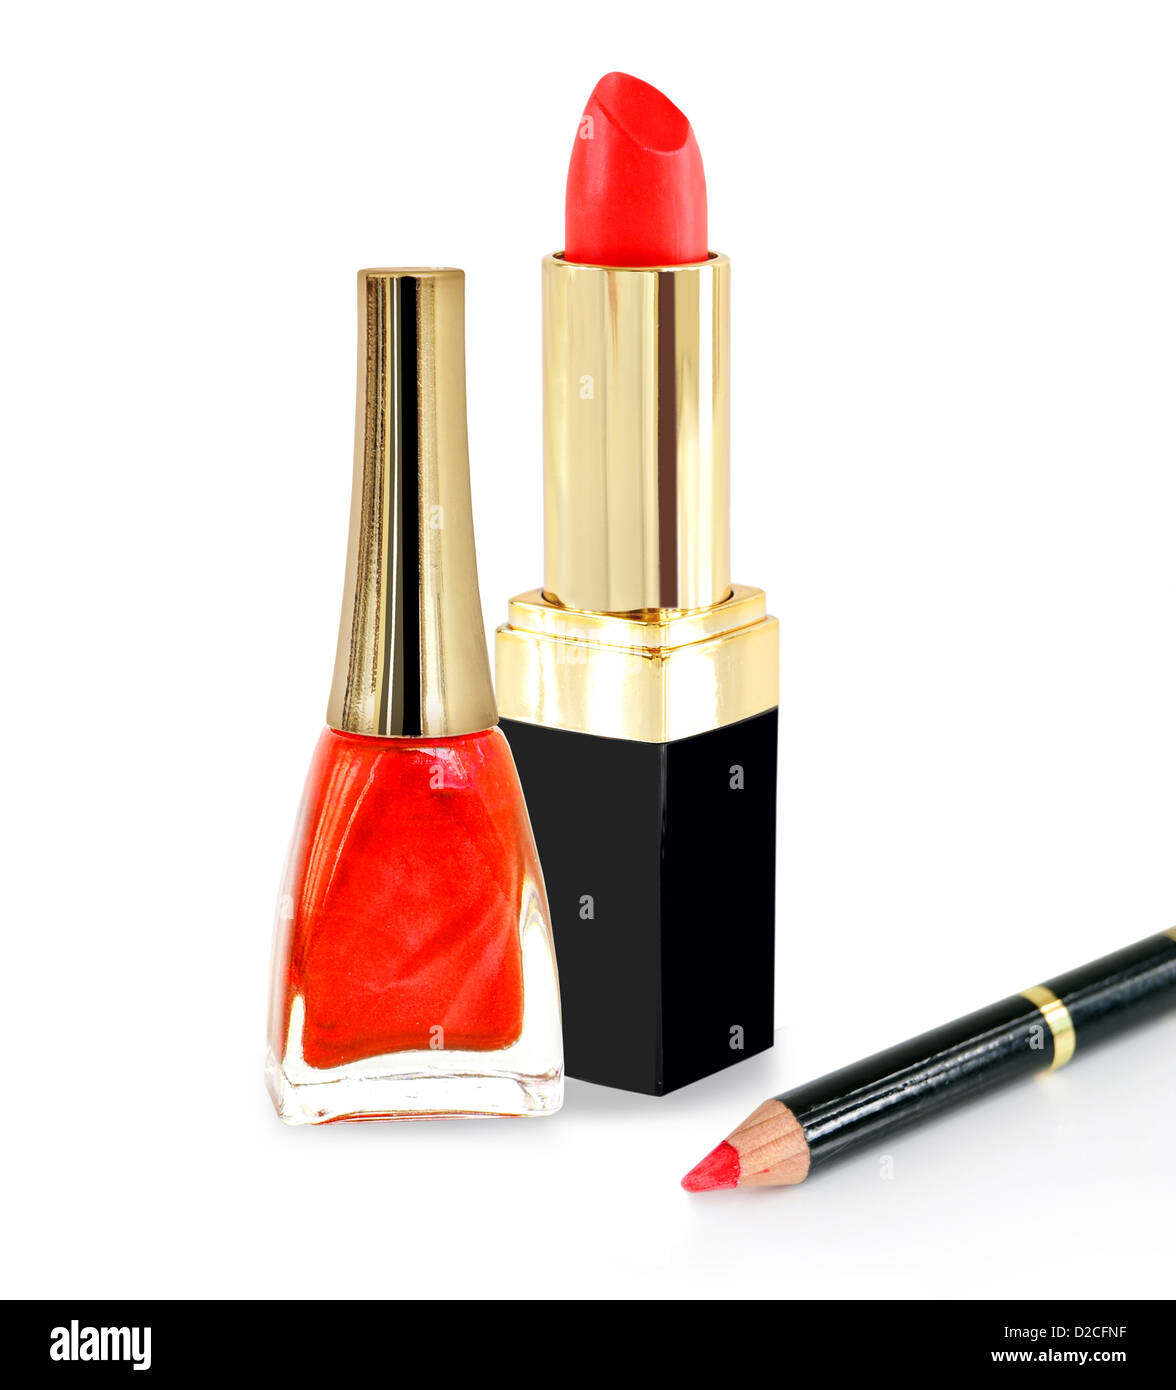 Red lipstick, nailpolish and pencil Stock Photo